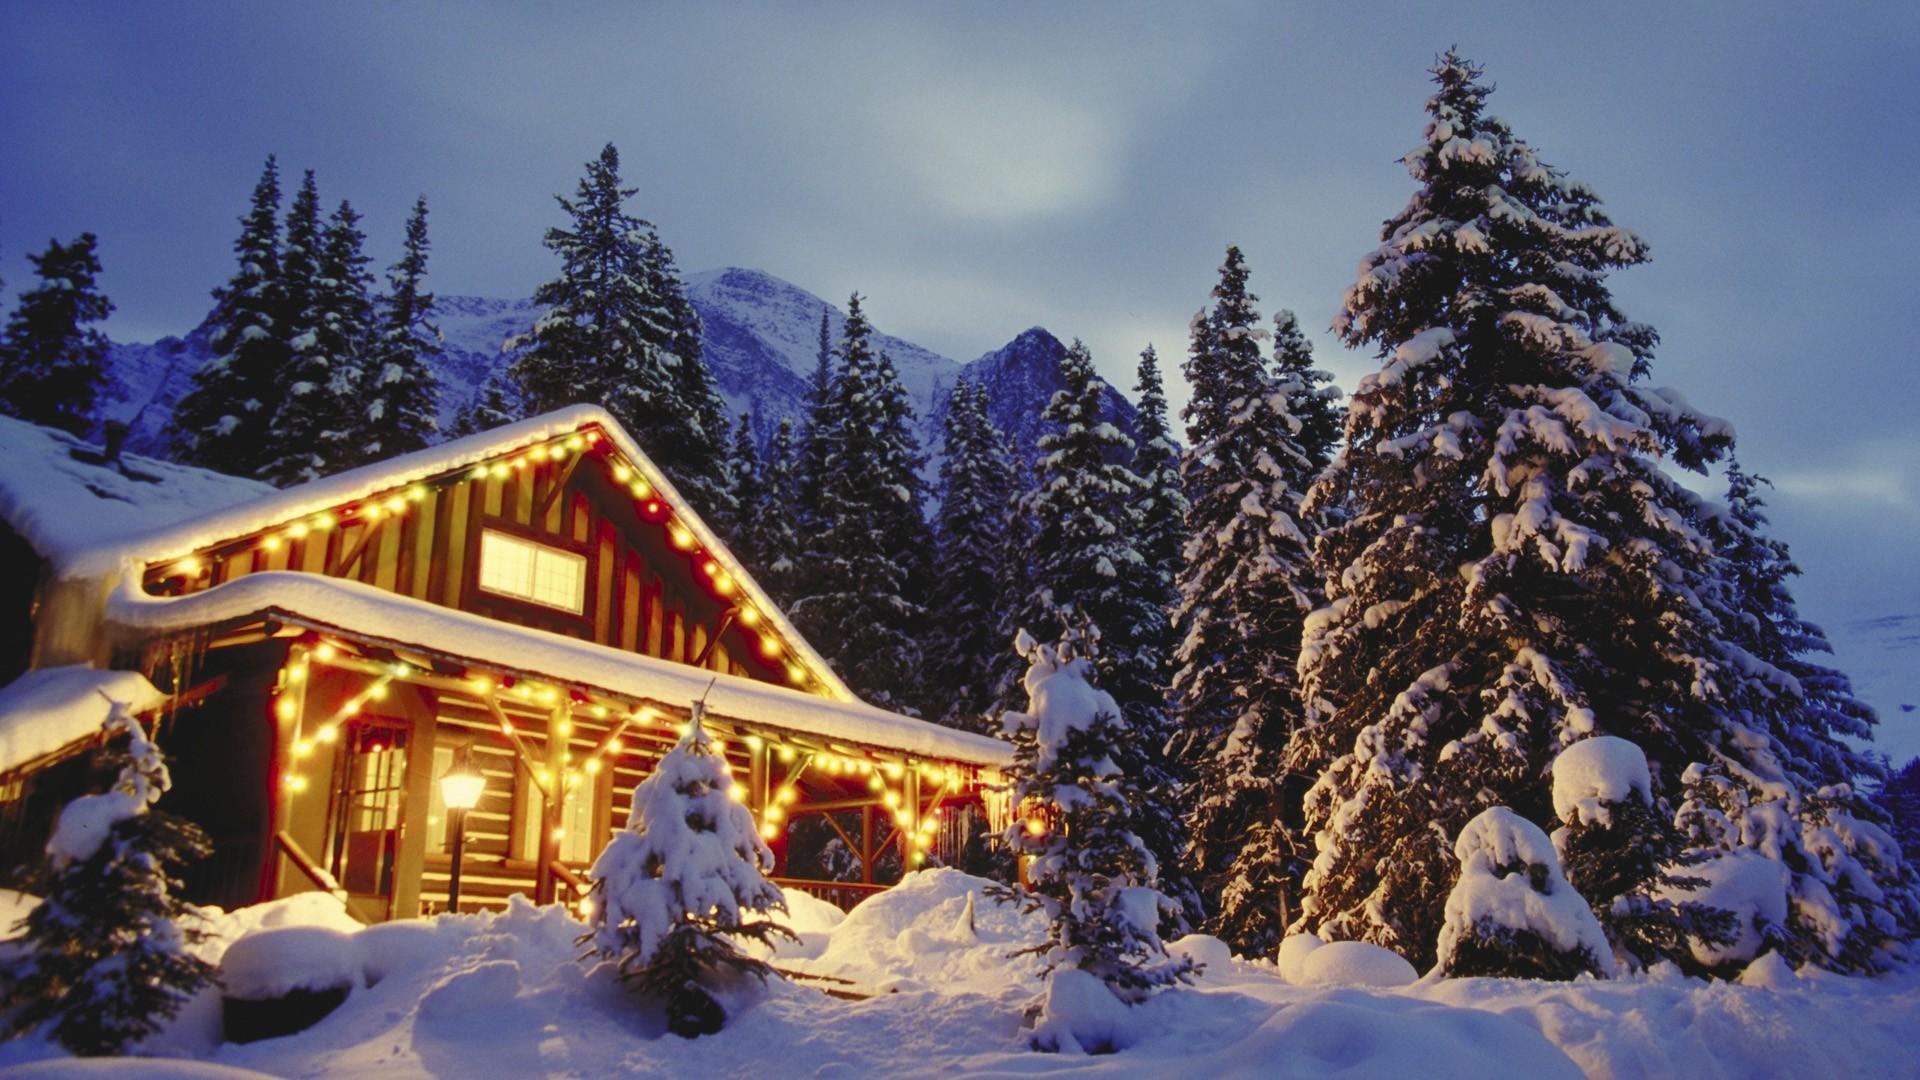 Với khung cảnh núi non phủ tuyết đẹp tuyệt vời, khiến cho cảnh Giáng Sinh trong bức hình không còn chỉ là giáng sinh bình thường mà là sự kiện đầy ấn tượng.